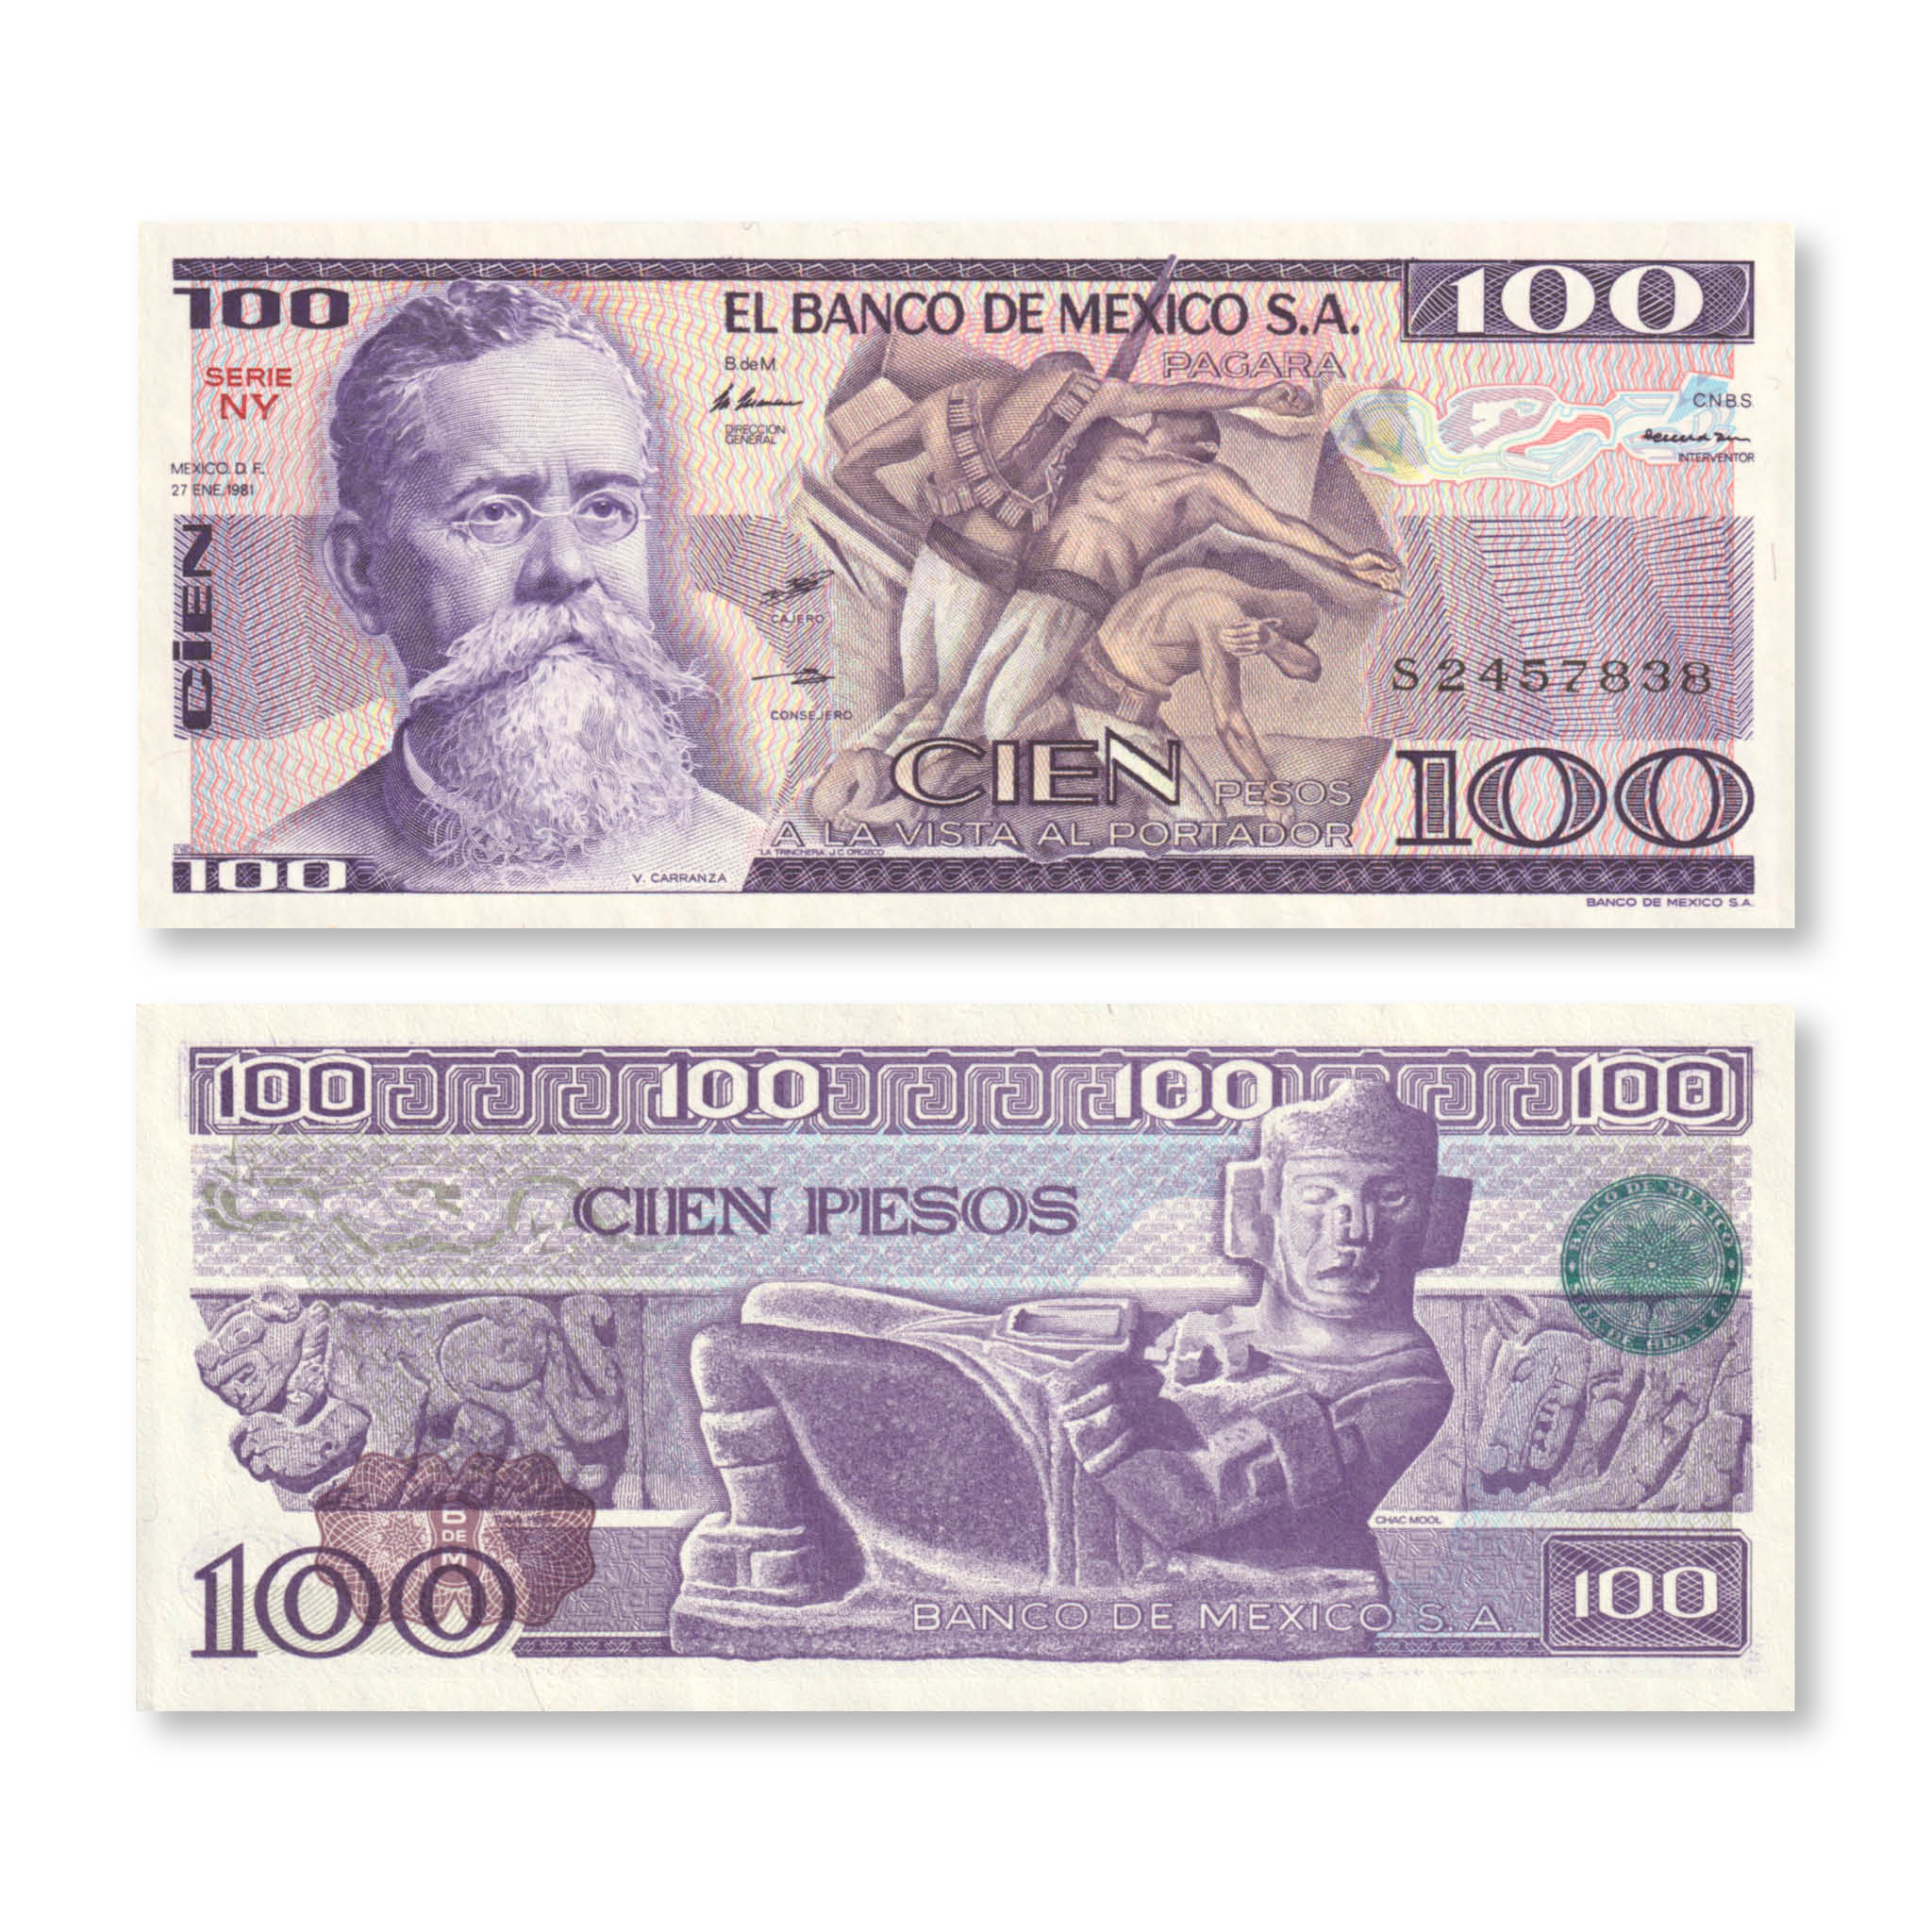 Mexico 100 Pesos, 1981, B650a, P74a, UNC - Robert's World Money - World Banknotes